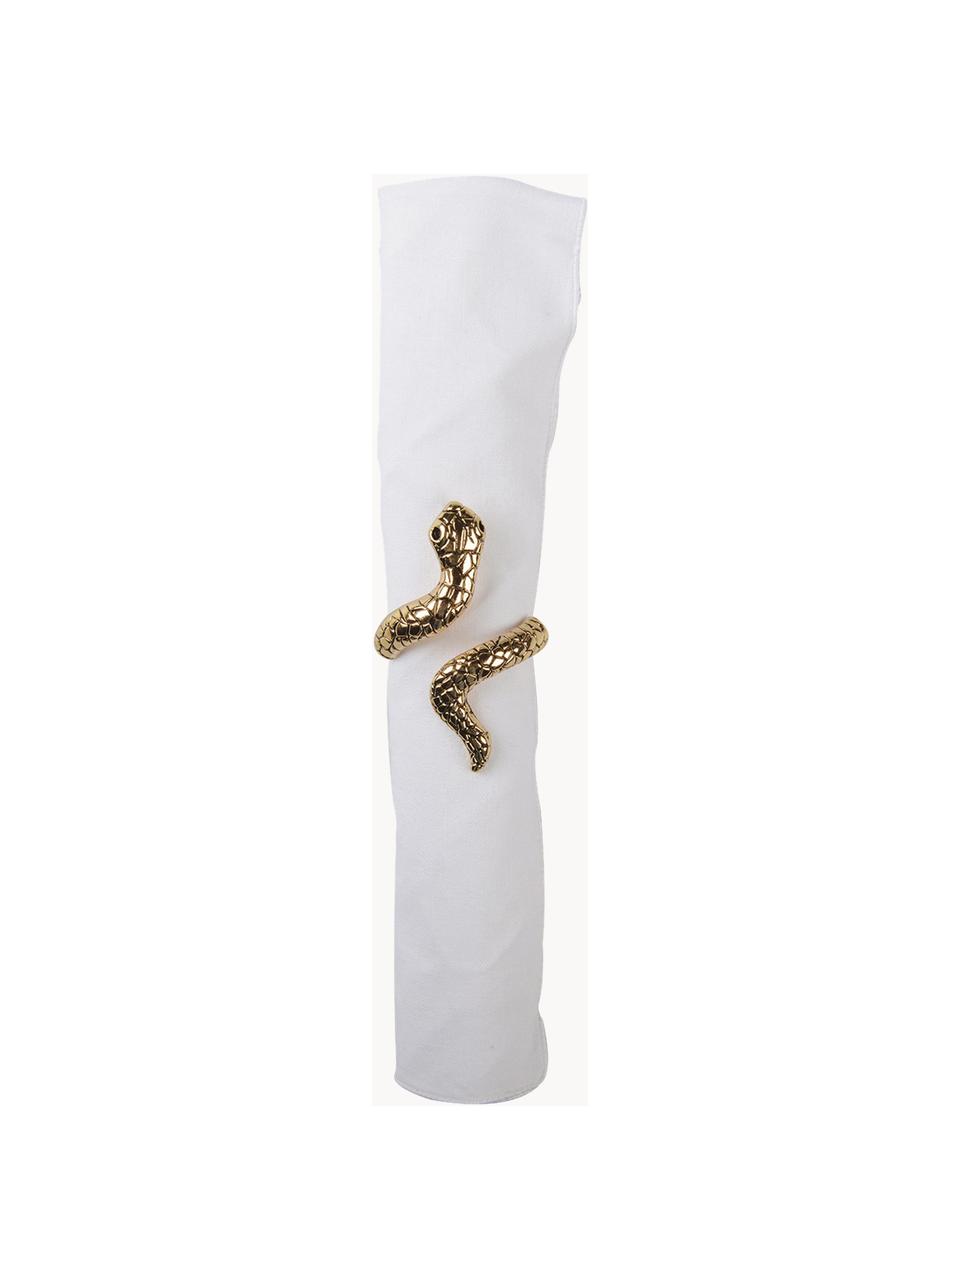 Serviettenringe Serpent mit Schlangenmotiv, 4 Stück, Metall, Goldfarben, Ø 4 x H 6 cm